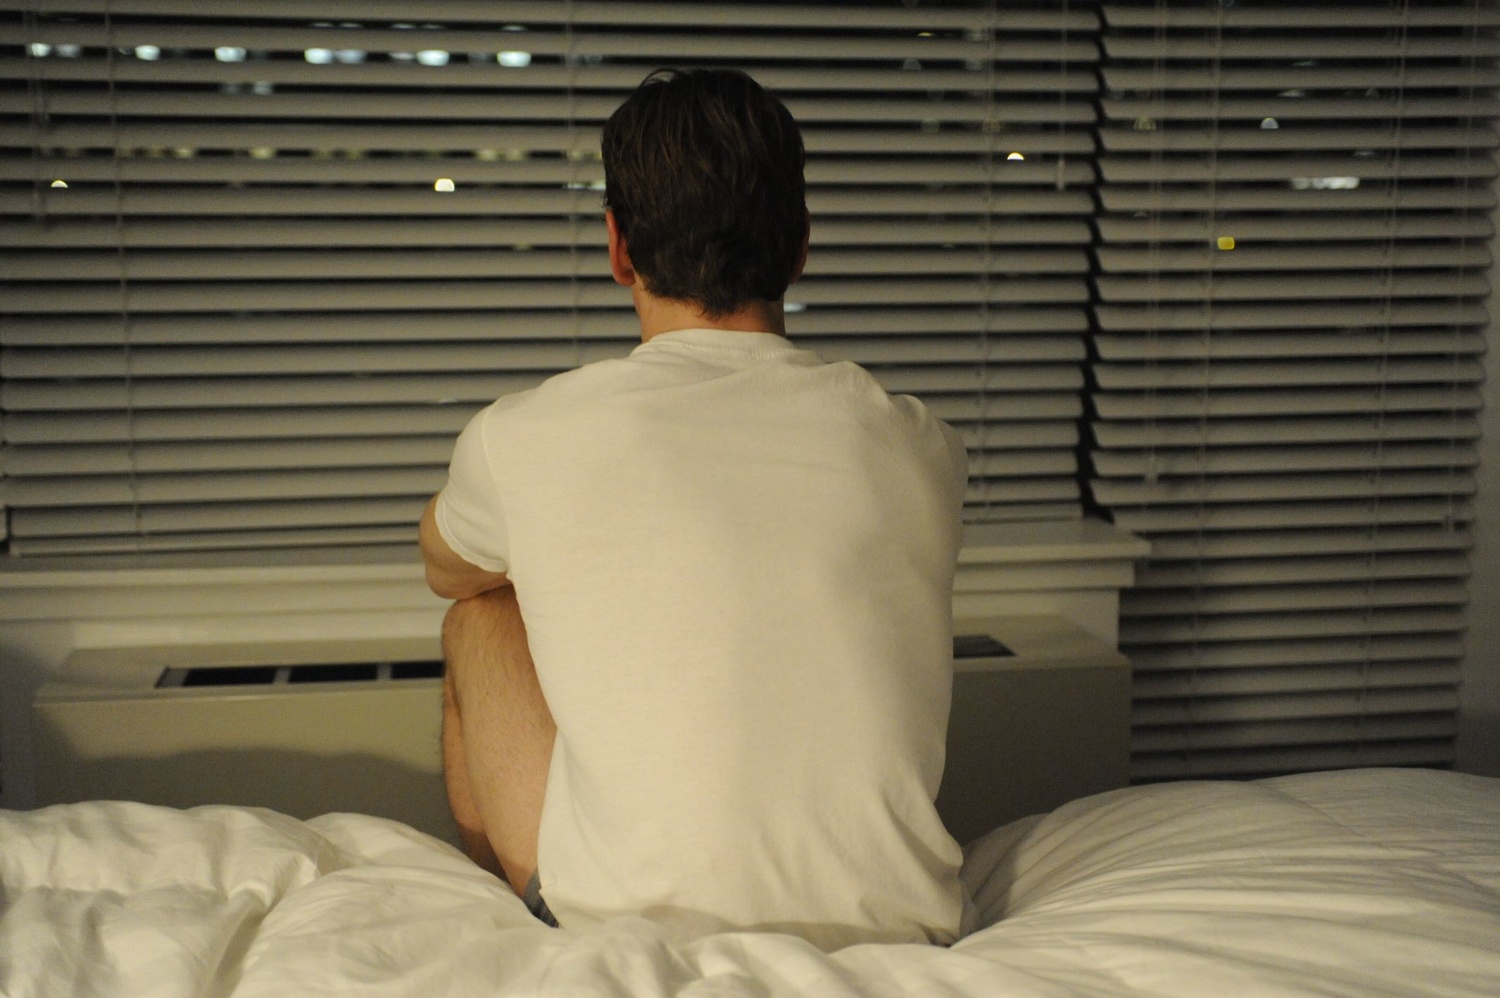 Le personnage incarné par Michael Fassbender est assis sur un lit, de dos. Image issue du film "Shame" réalisé par Steve McQueen.